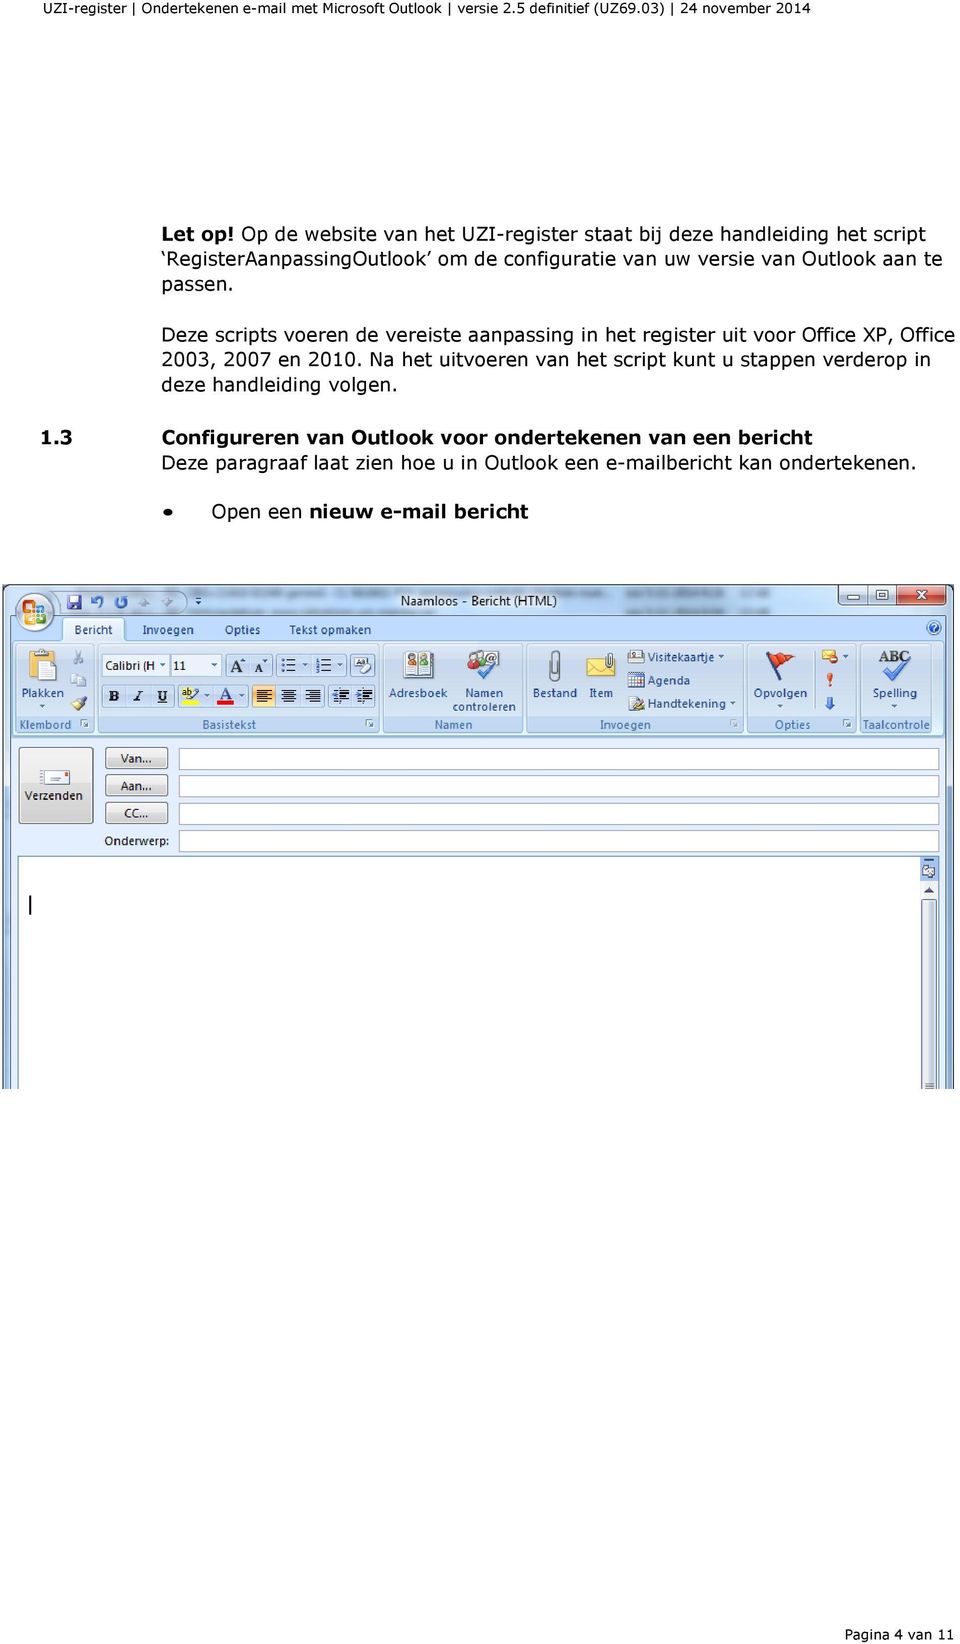 Outlook aan te passen. Deze scripts voeren de vereiste aanpassing in het register uit voor Office XP, Office 2003, 2007 en 2010.